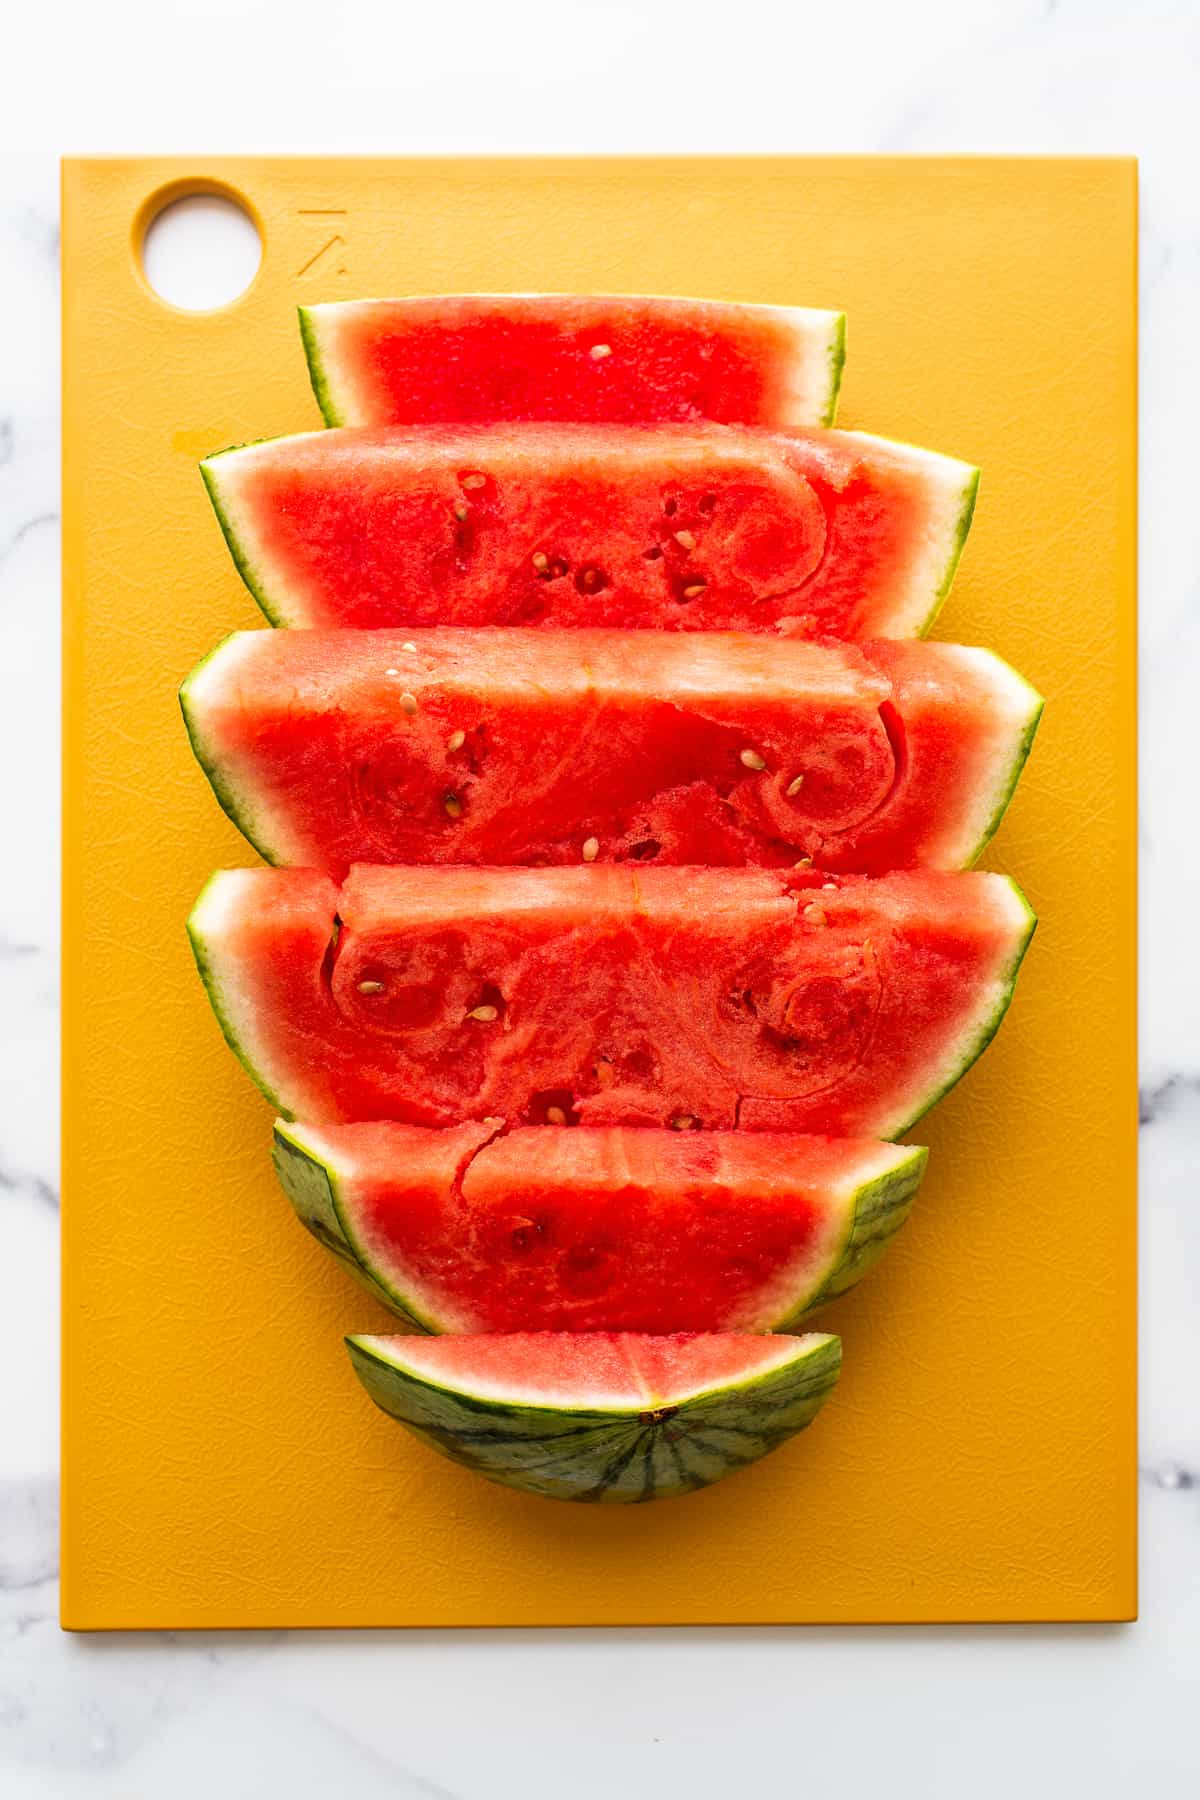 sliced watermelon on cutting board